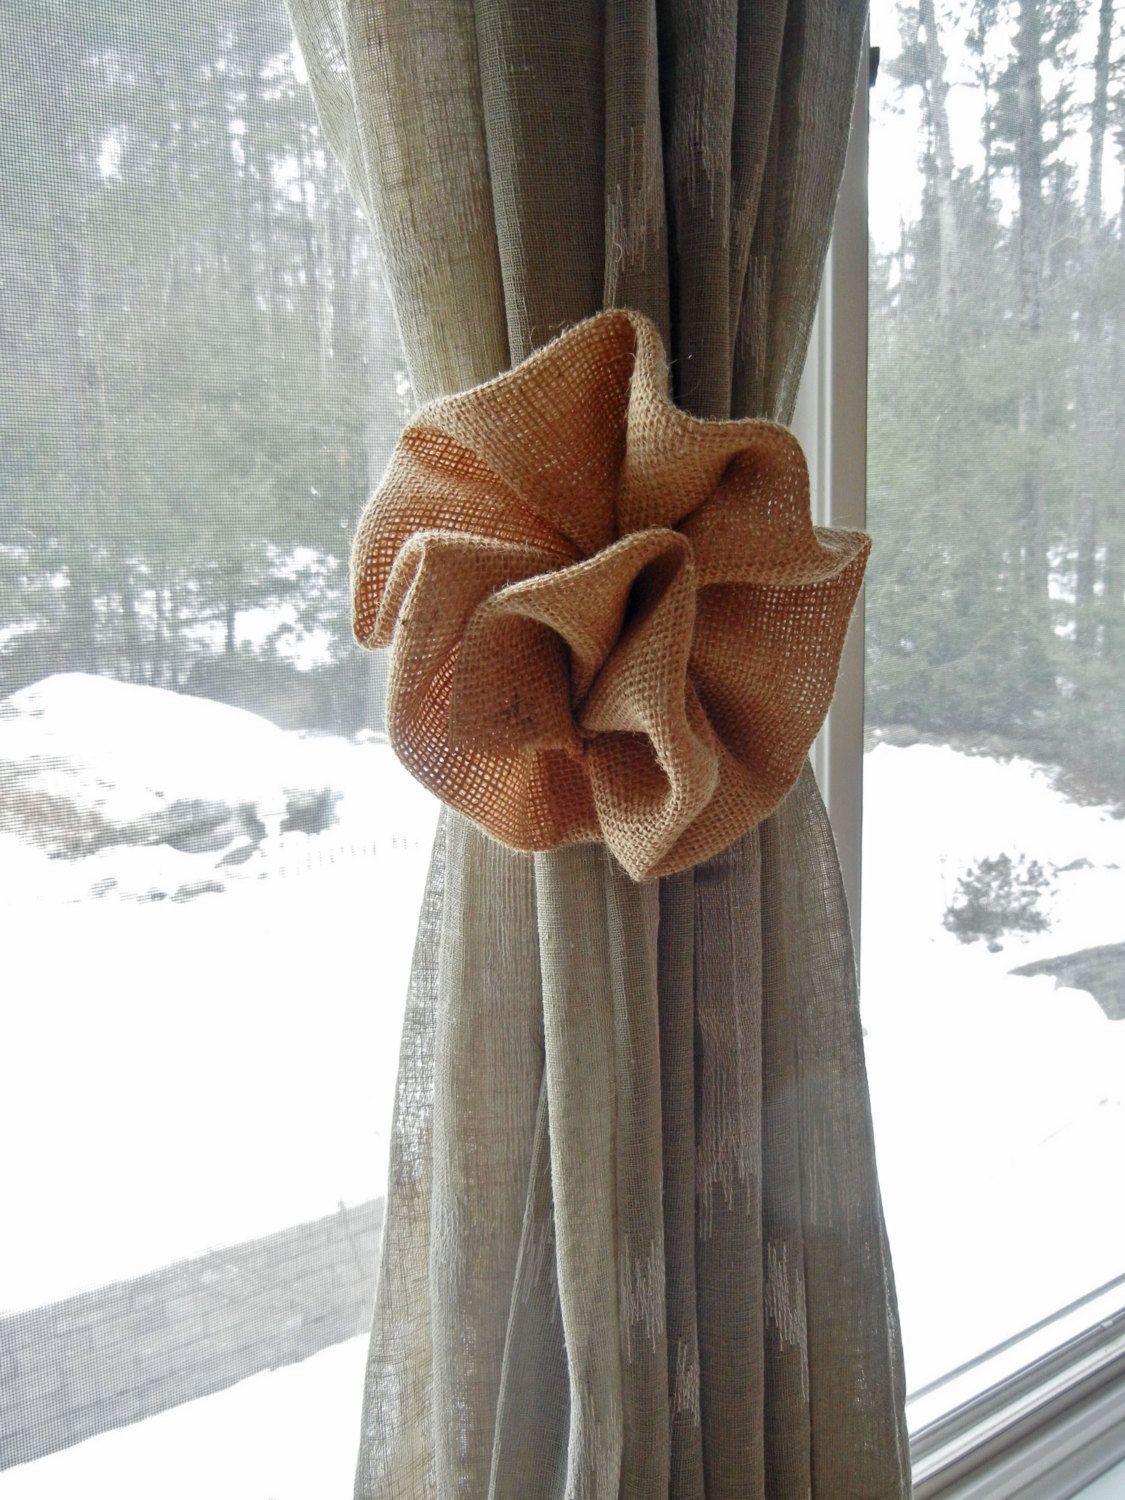 Bên khung cửa sổ nhìn ra khung cảnh mùa Đông với tuyết rơi trắng xóa bên ngoài, chiếc rèm màu ghi đính bông hoa vải bố  nâu nhạt cho cảm giác ấm áp lạ kỳ!